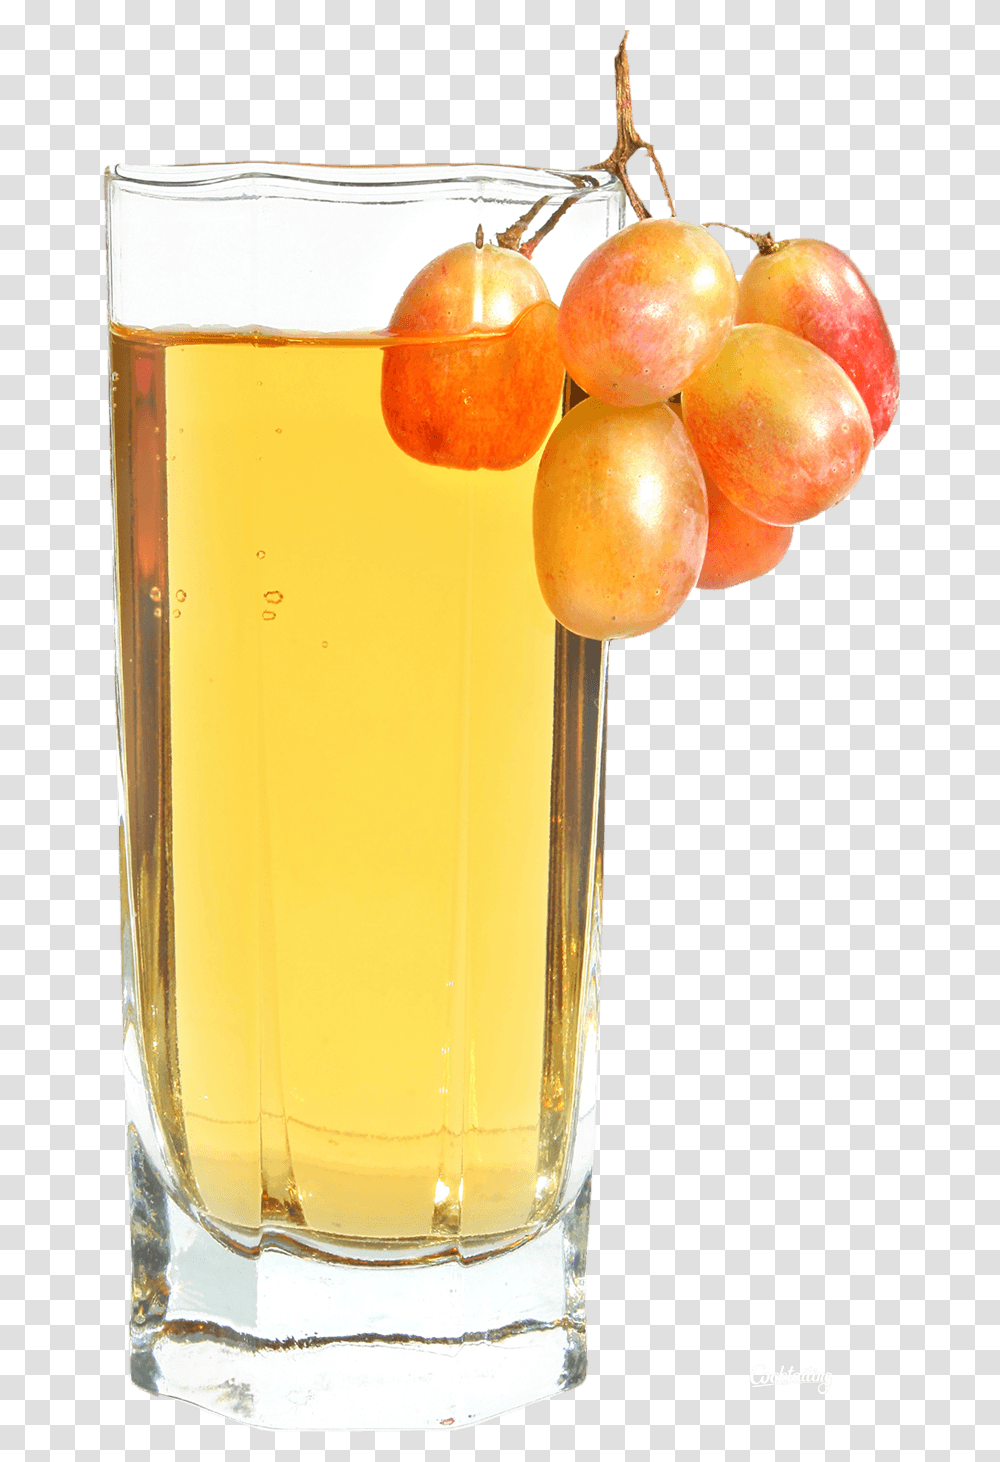 Juice 7 Background Images Free Download Apple Juice, Beverage, Drink, Glass, Plant Transparent Png